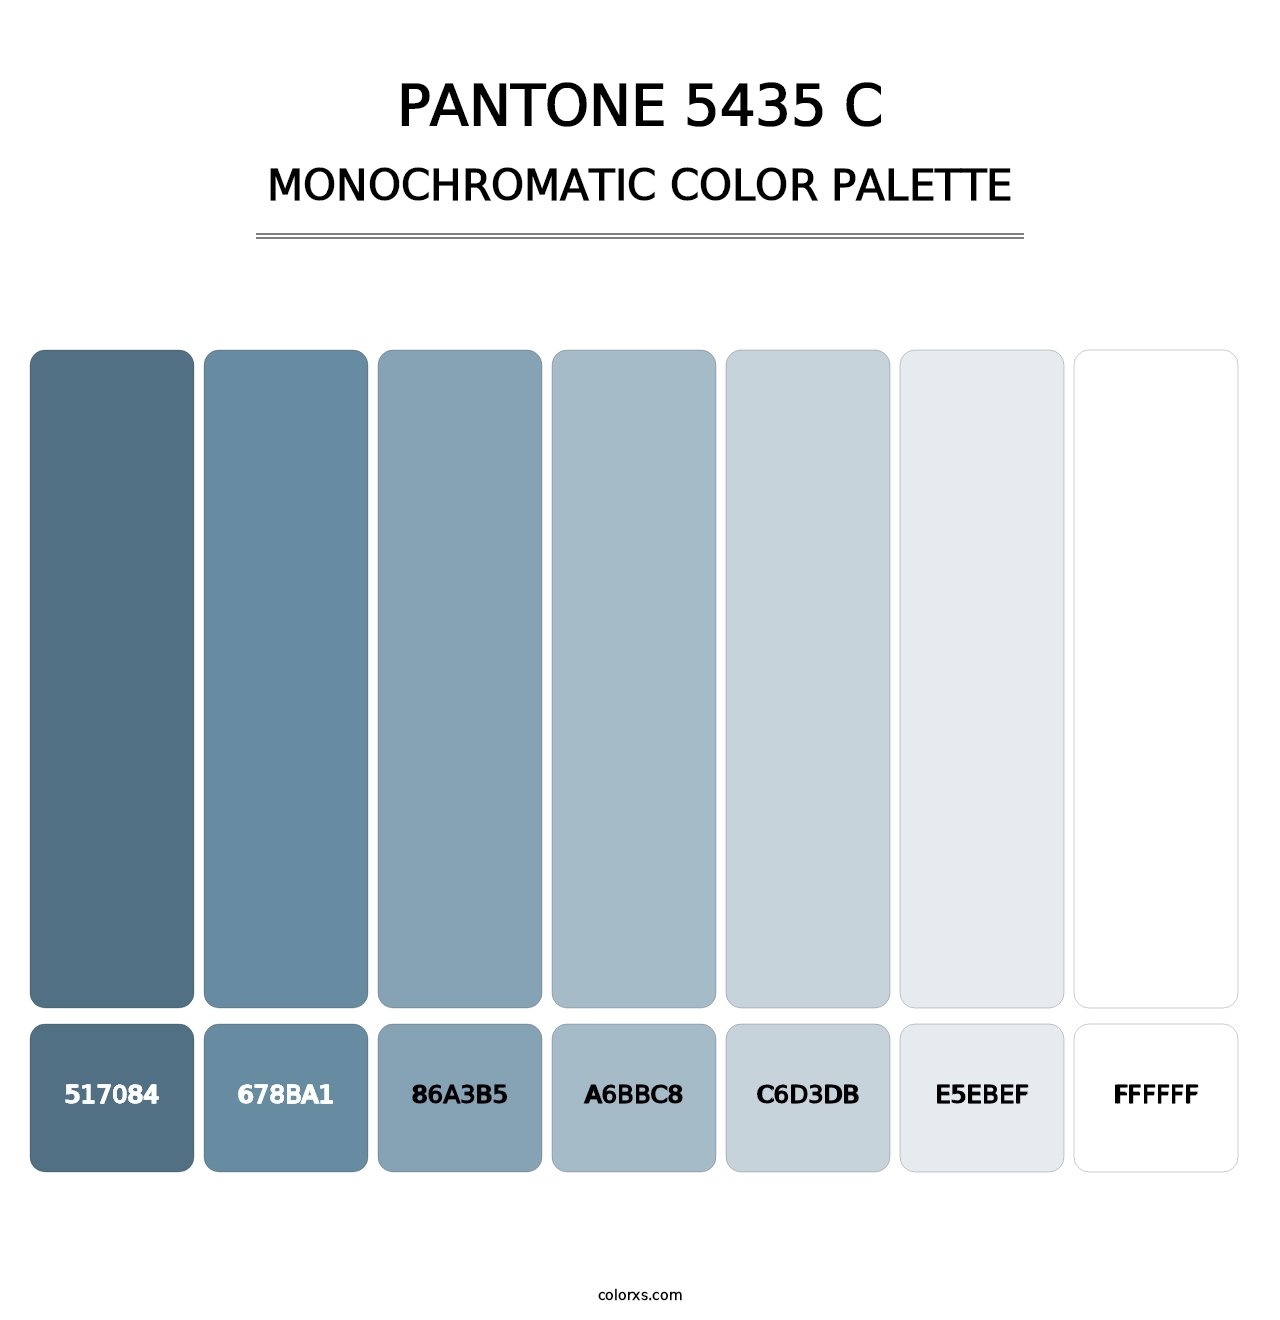 PANTONE 5435 C - Monochromatic Color Palette